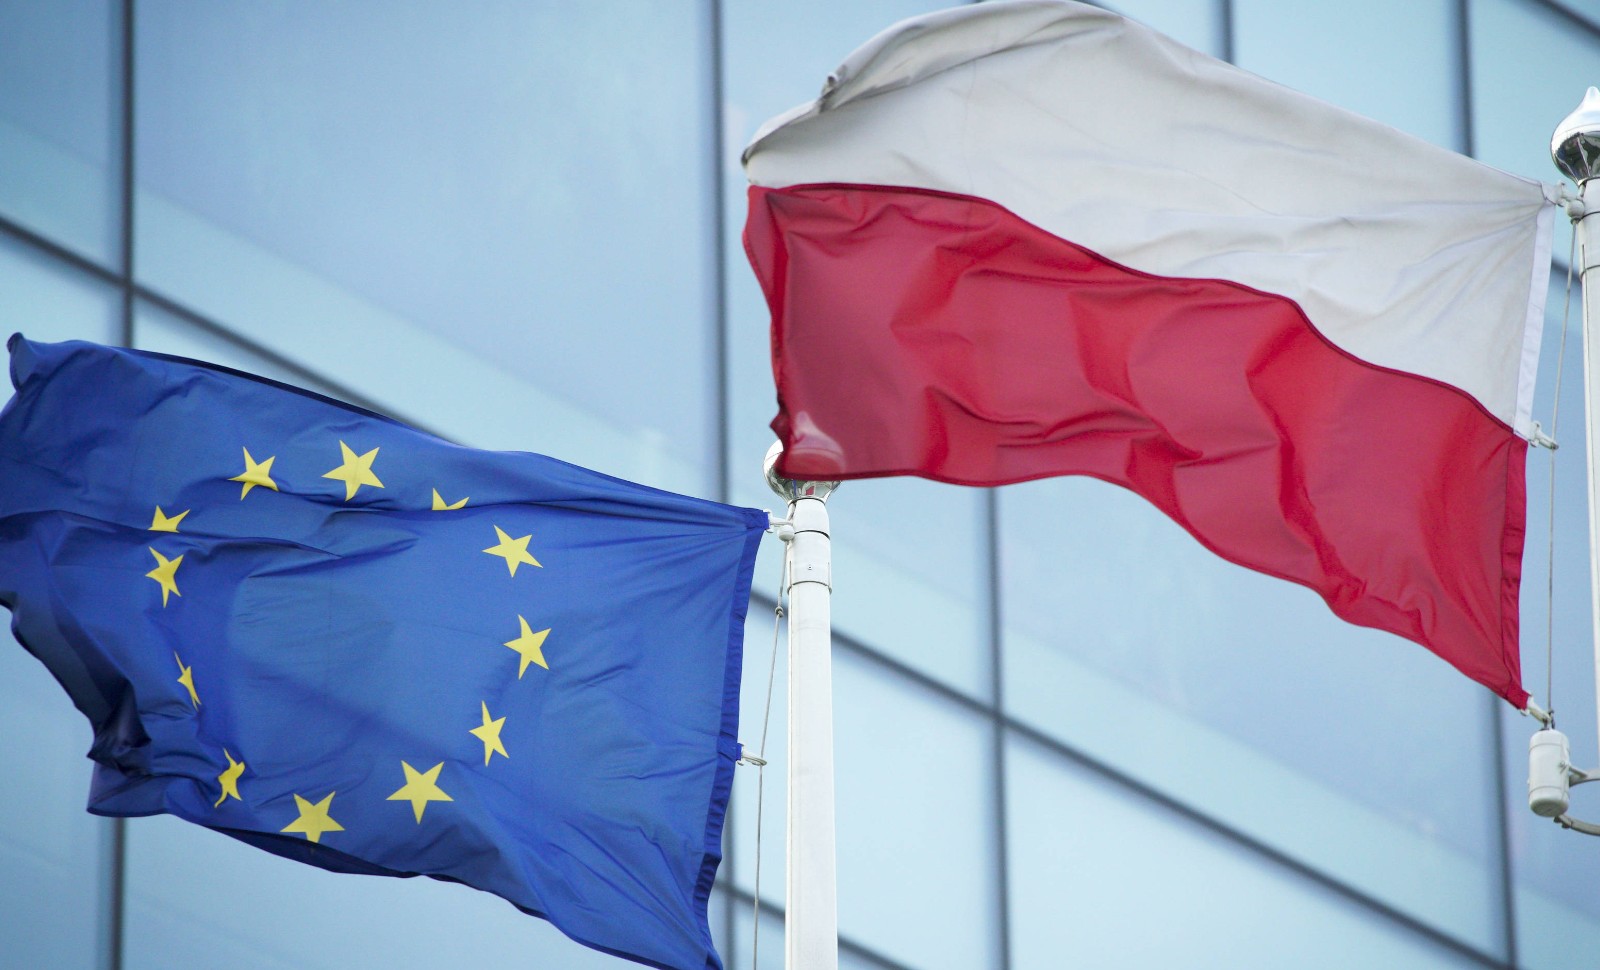 La Pologne est un pays hospitalier, ouvert et solidaire, quoi qu’en dise l’UE